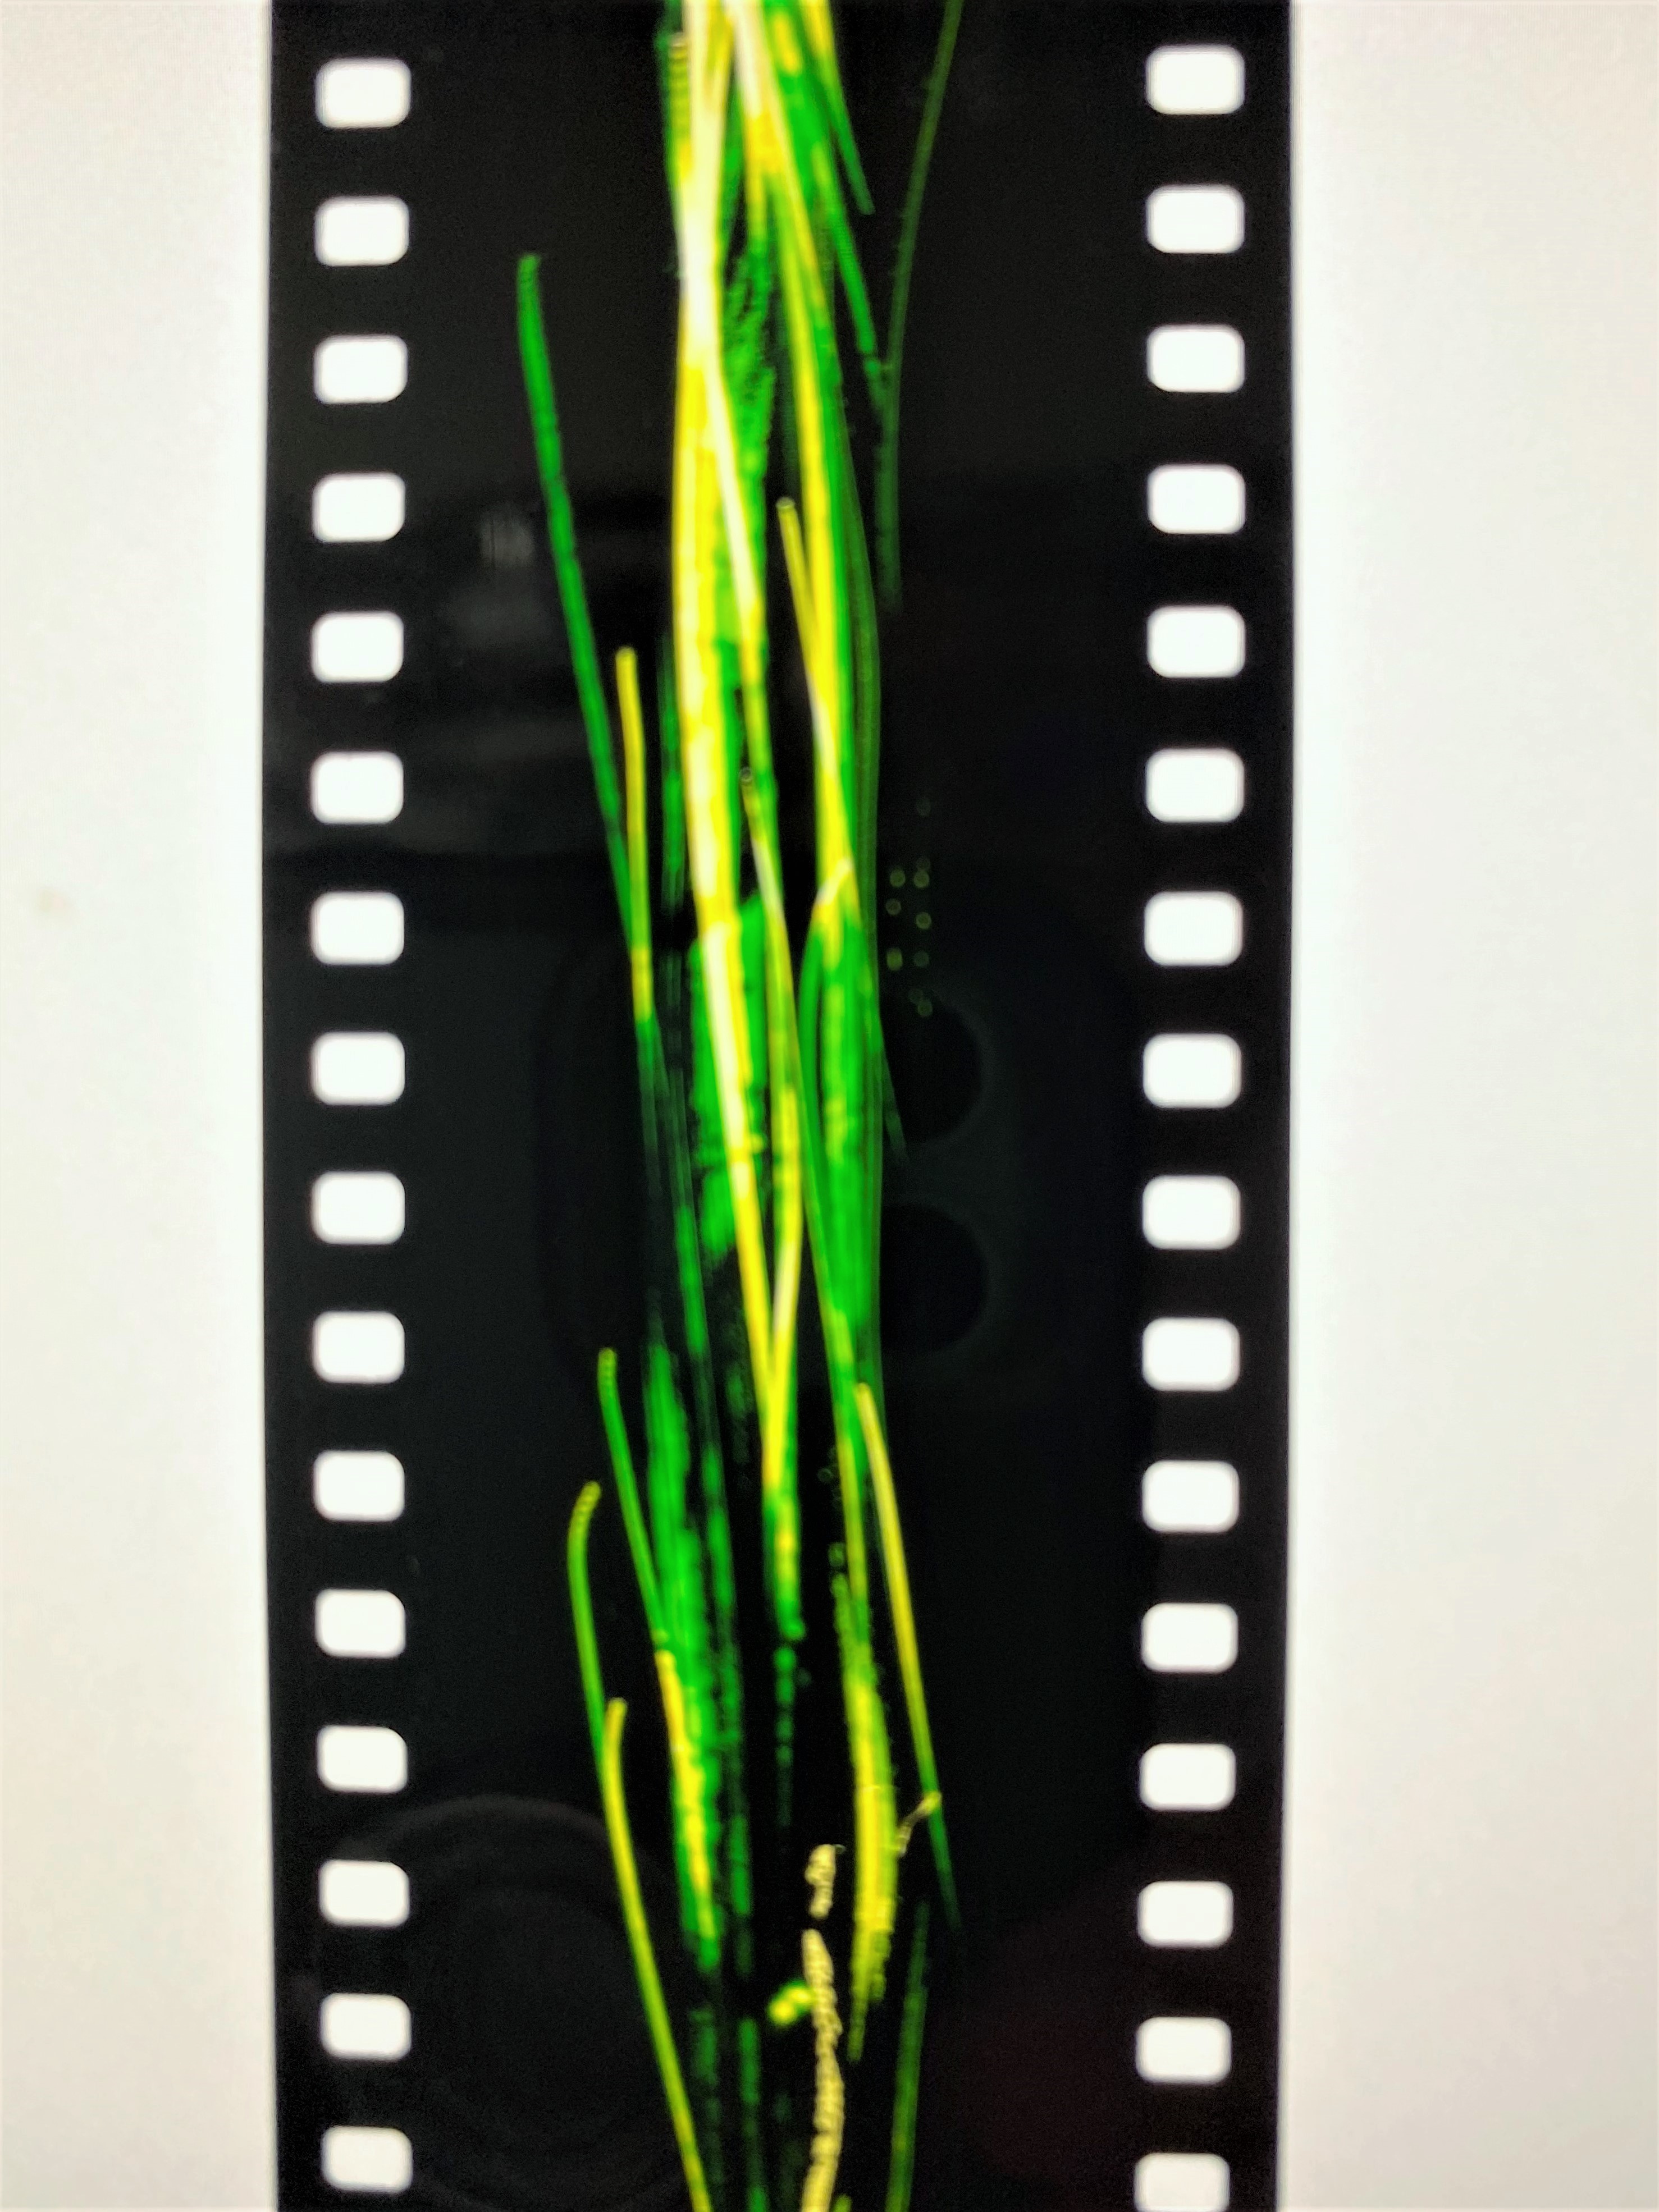 削って線をかいたフィルム、真っ黒な背景に明るい黄緑や黄色の線が見える